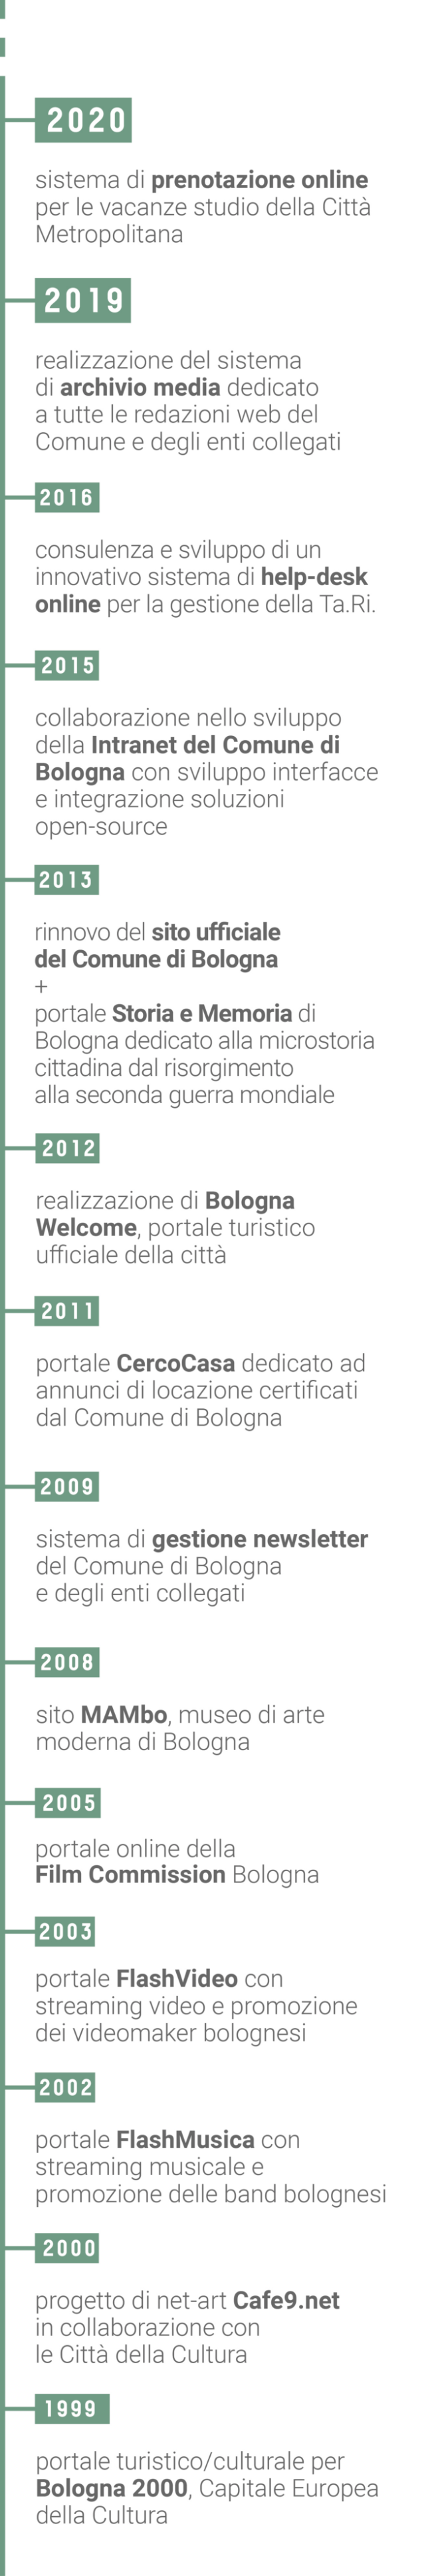 Timeline Comune di Bologna